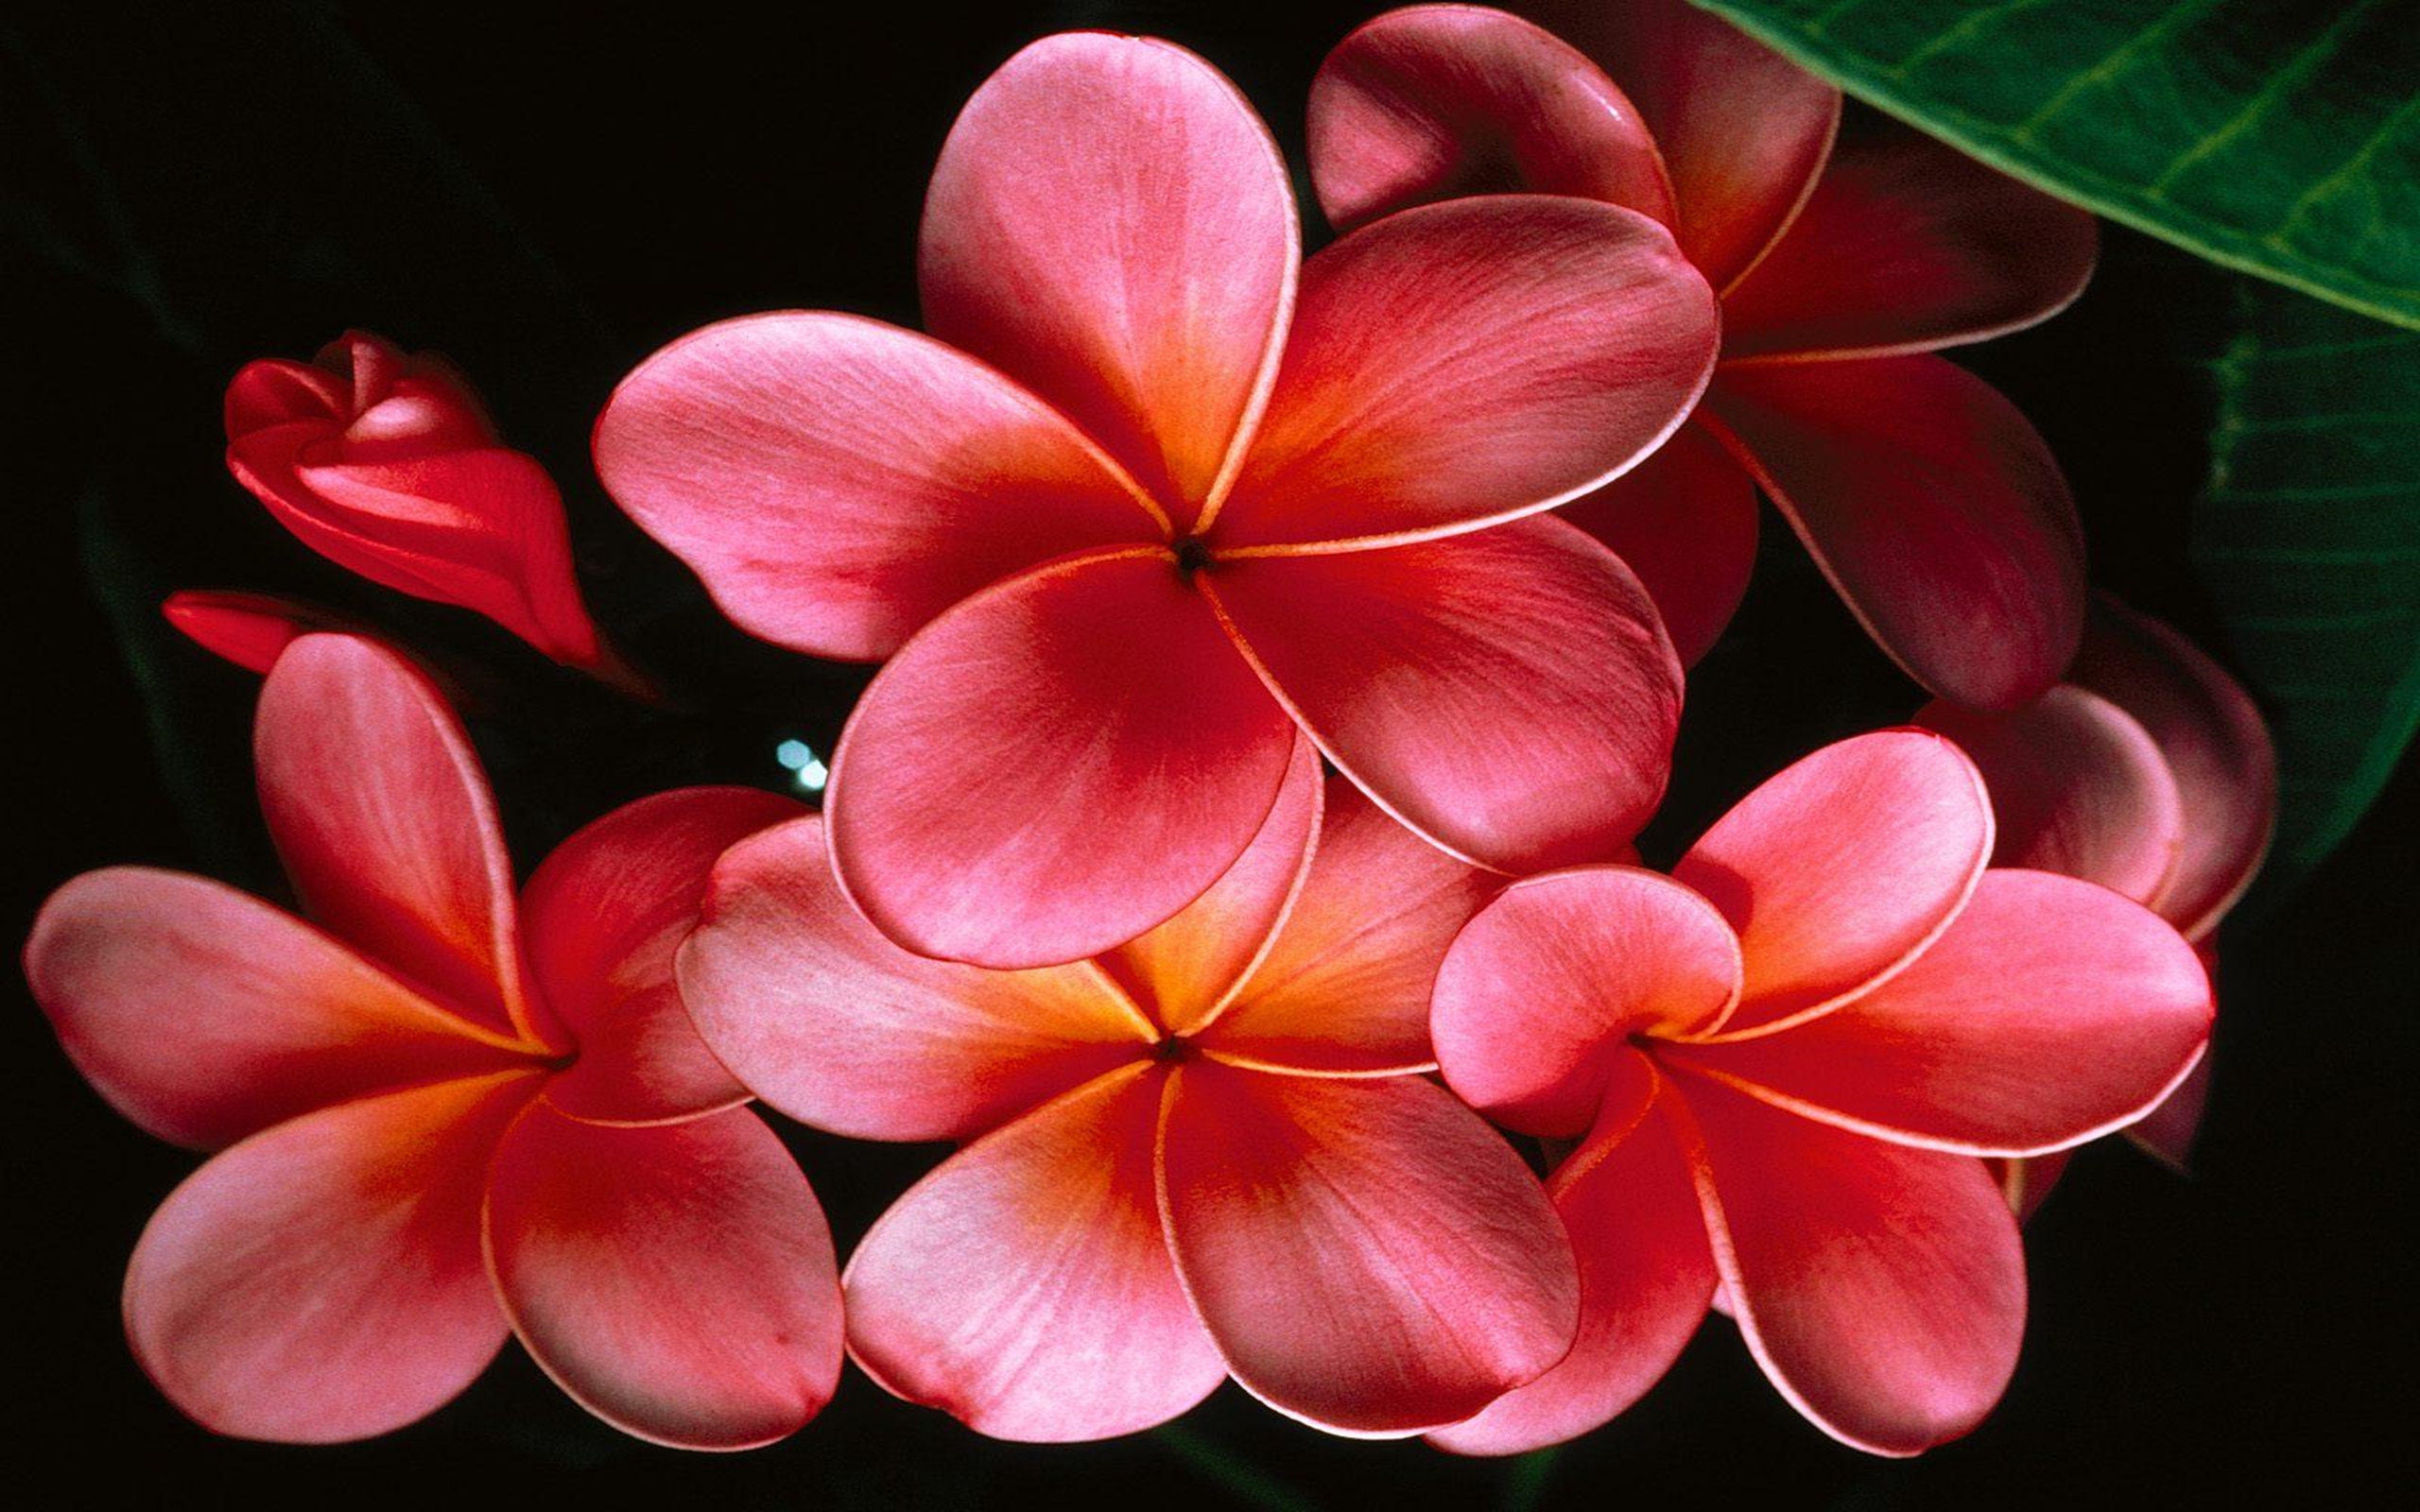 immagini da parati hd,petalo,frangipani,fiore,rosso,pianta